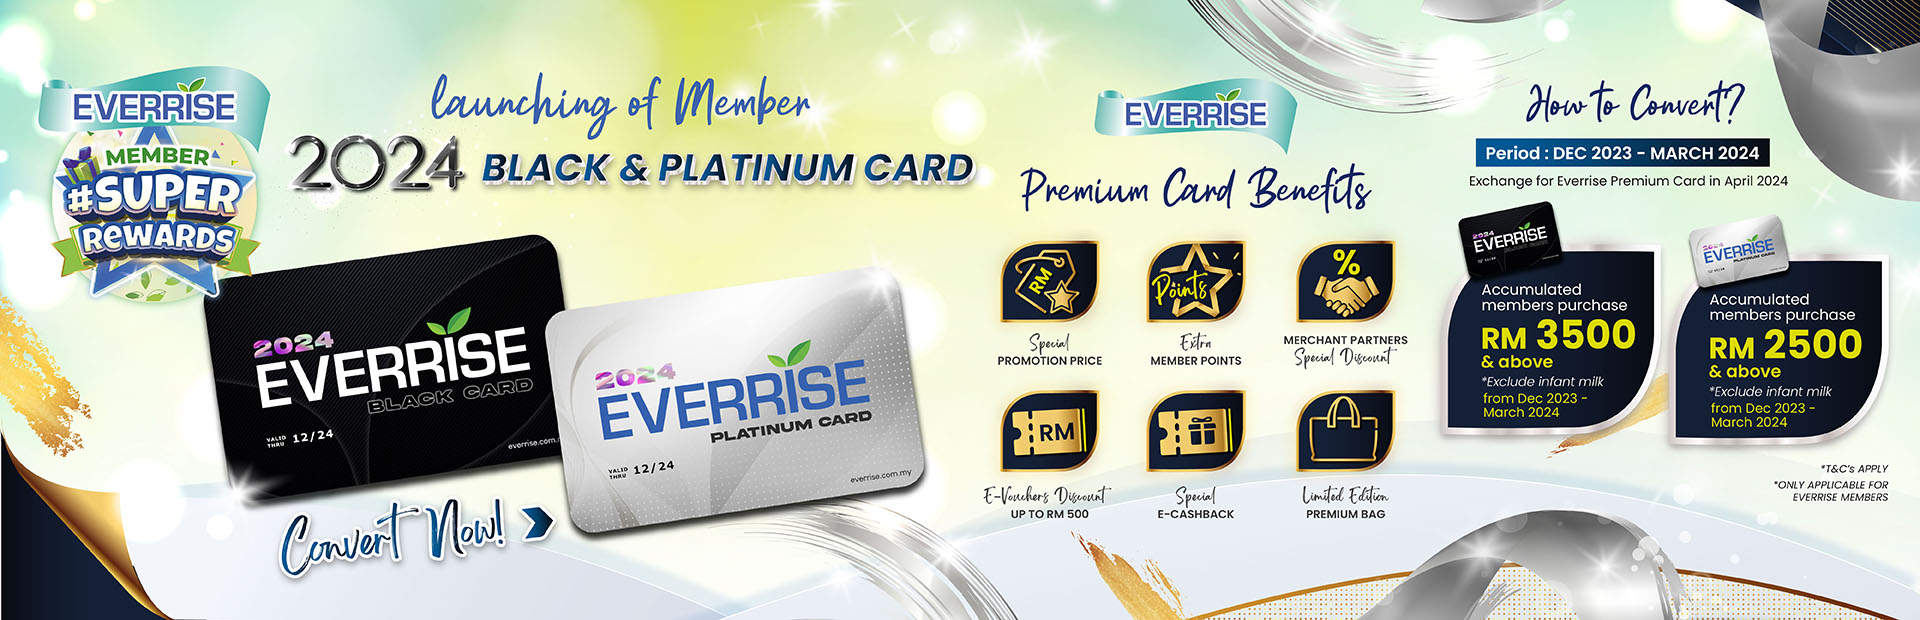 Everrise-Platinum-Card-WEB-1920px-01